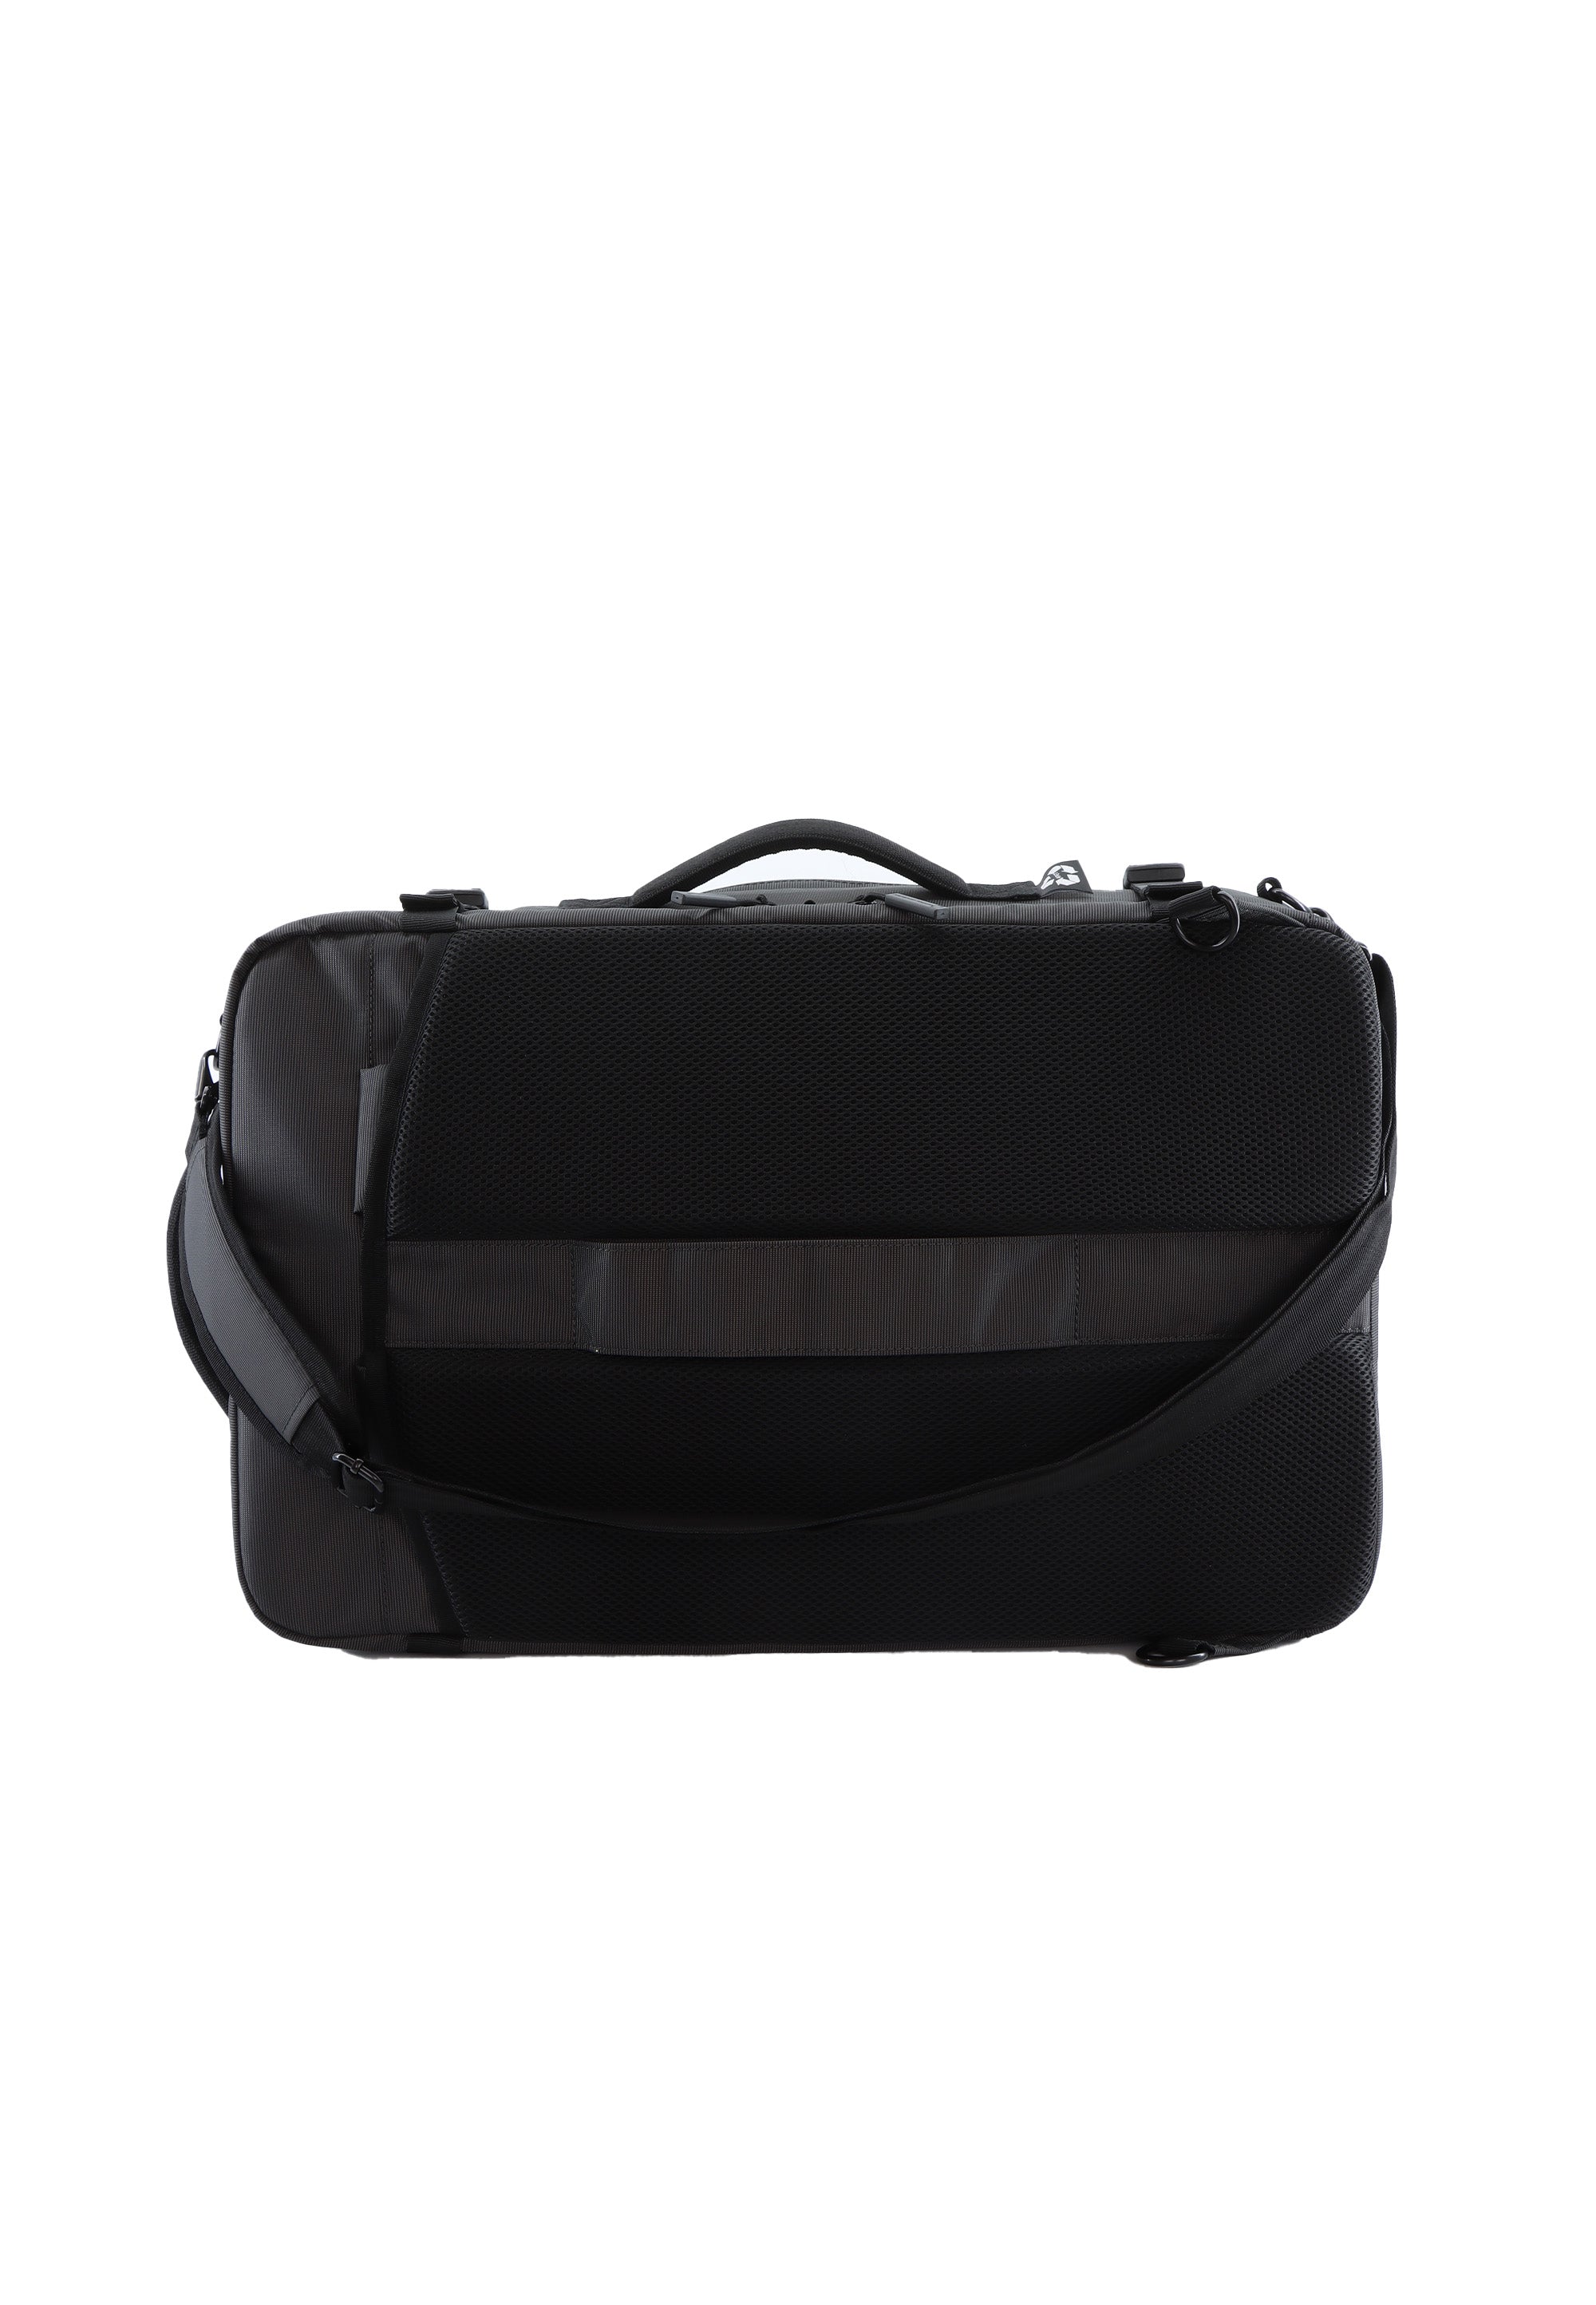 Laptoptasche Rucksack Schultertasche der Nat Geo Serie Ocean in schwarz RPET N20908